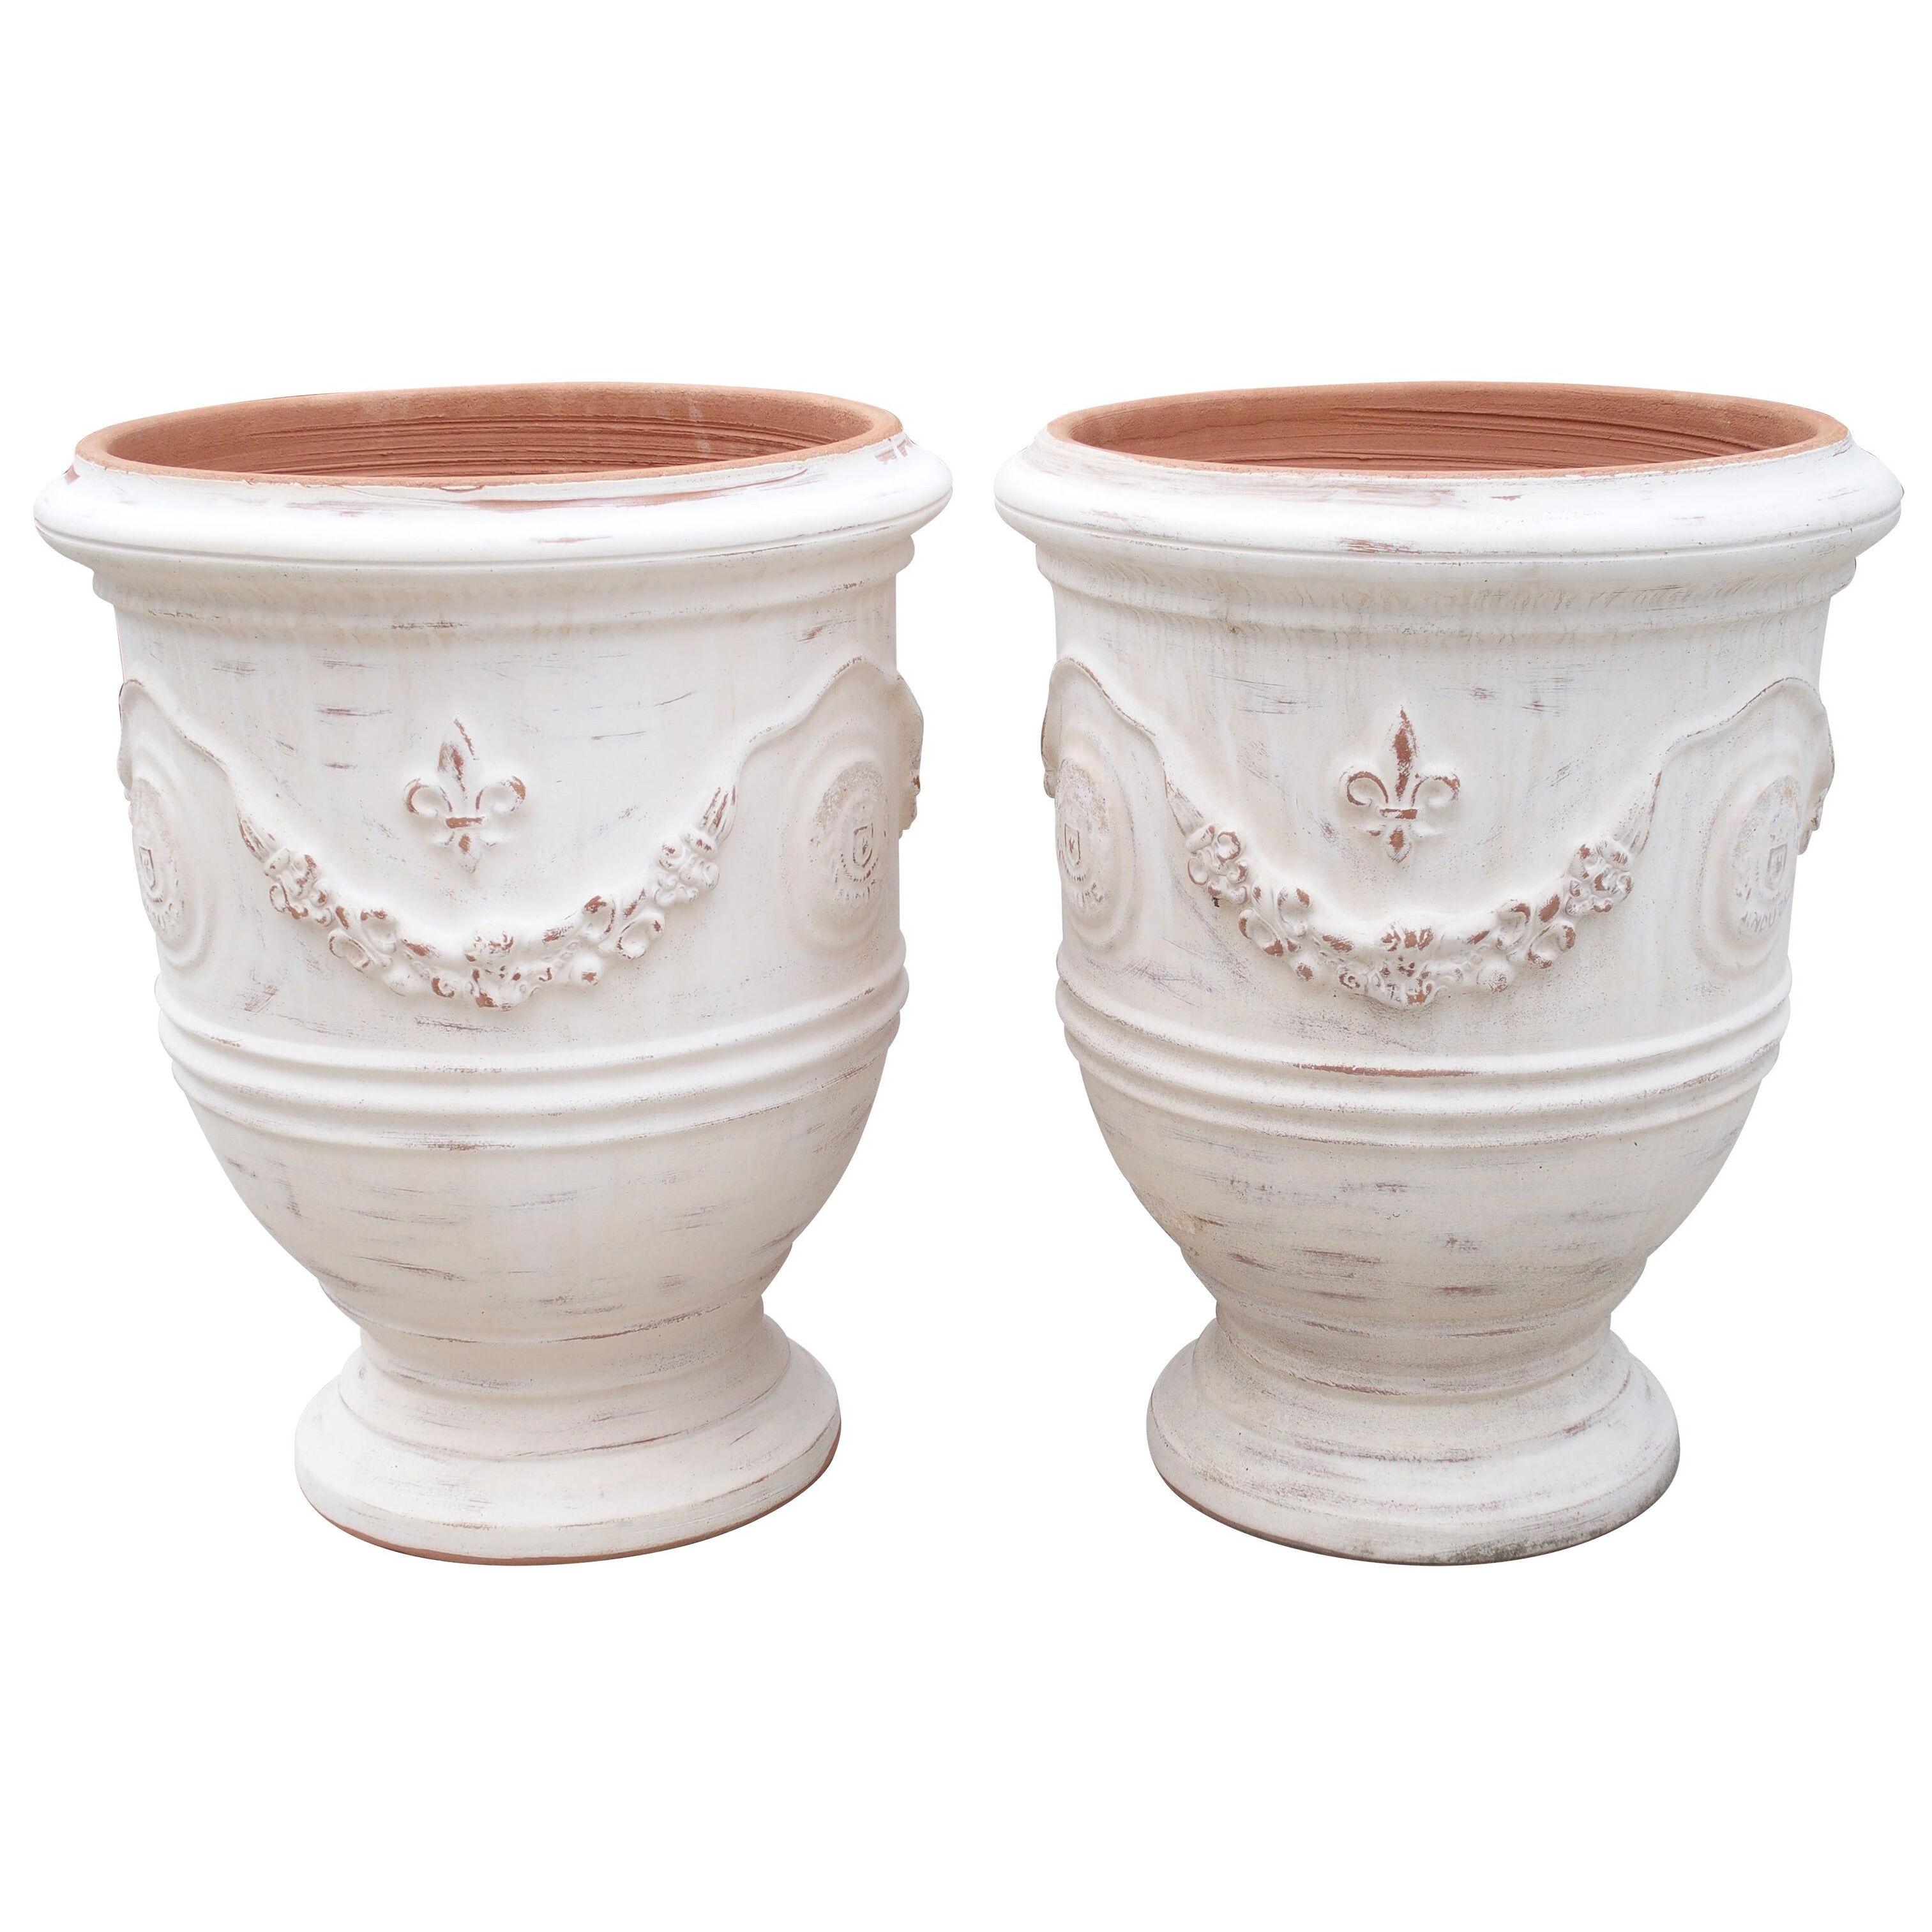 Pair of Antiqued White Fleur-de-Lys Anduze Pots from France